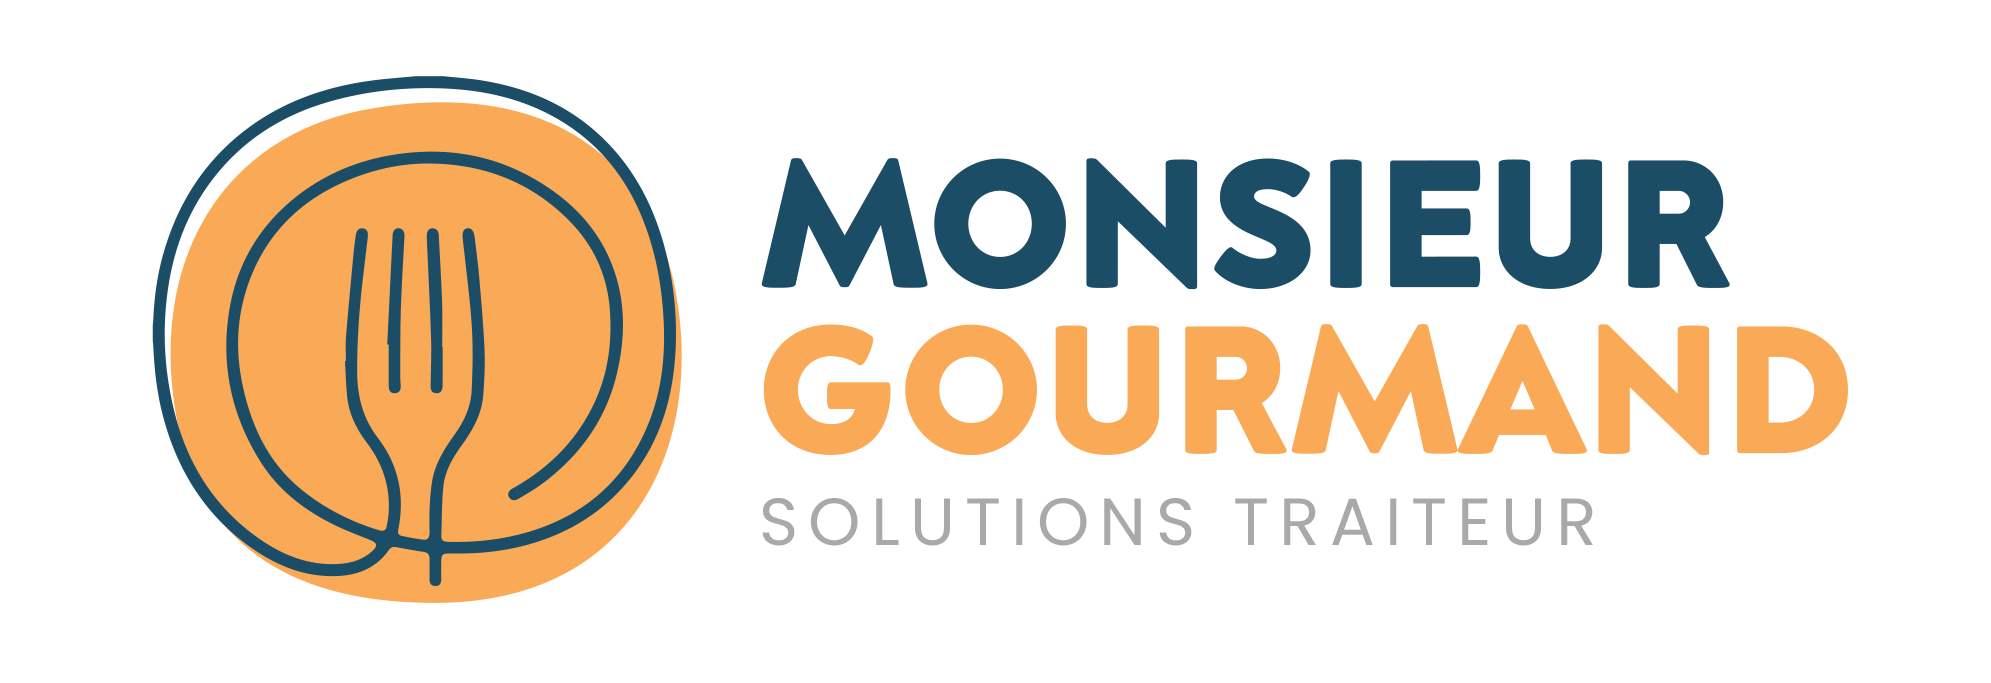 1991px x 683px - Monsieur Gourmand Â· Solutions traiteur multisites et itinÃ©rantes en France  Â· Petits-dÃ©jeuners, cocktails & buffets